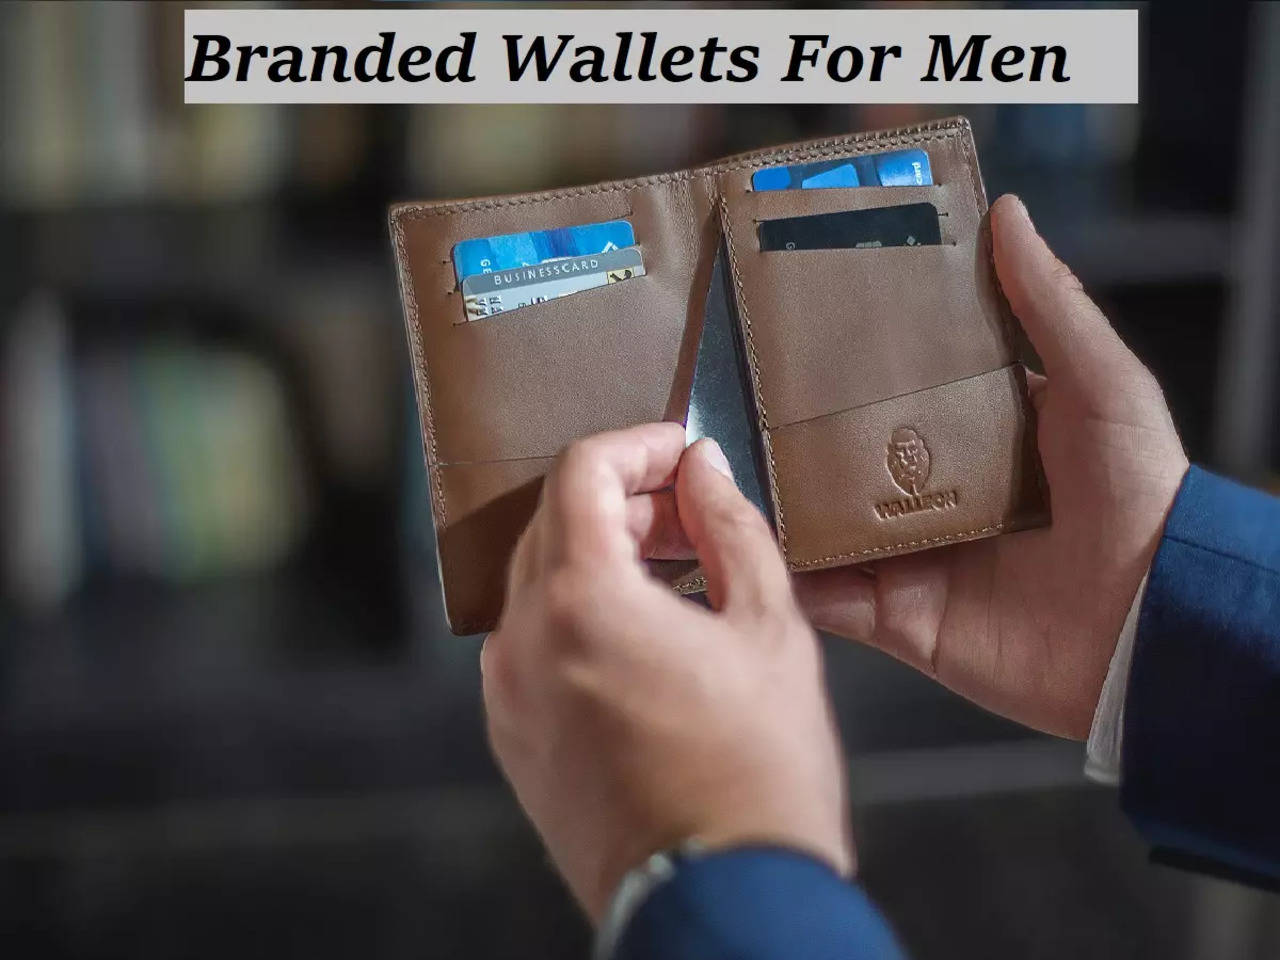 Best wallet brands for men : Top branded wallets for men - Times